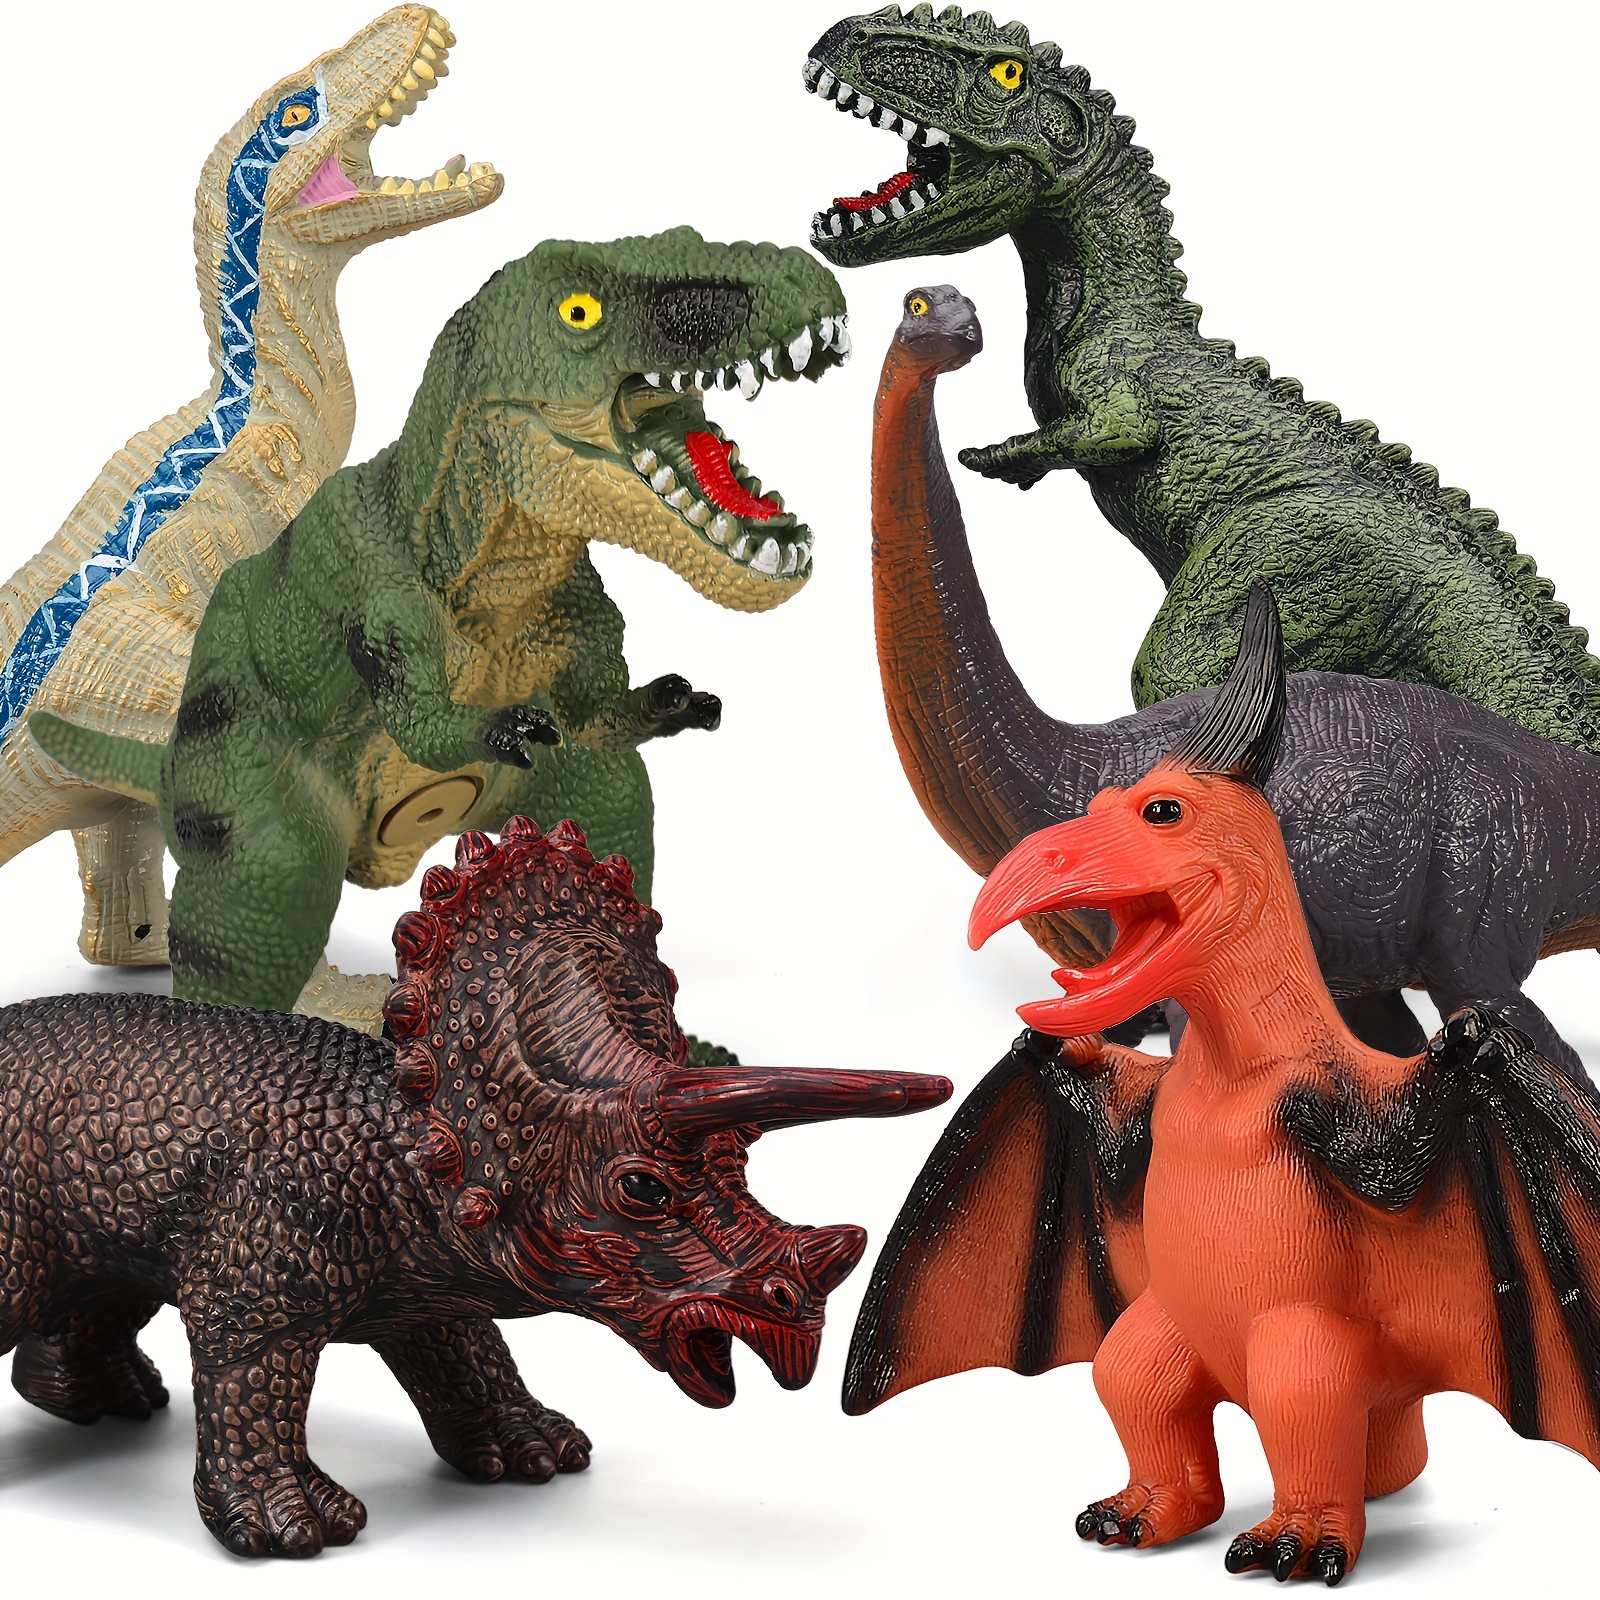 Jouets de doigt de dinosaure Slingshot – Jouets de dinosaure volant en  caoutchouc, jouets de doigt de dinosaure de lancement, jouet extensible de  jeu